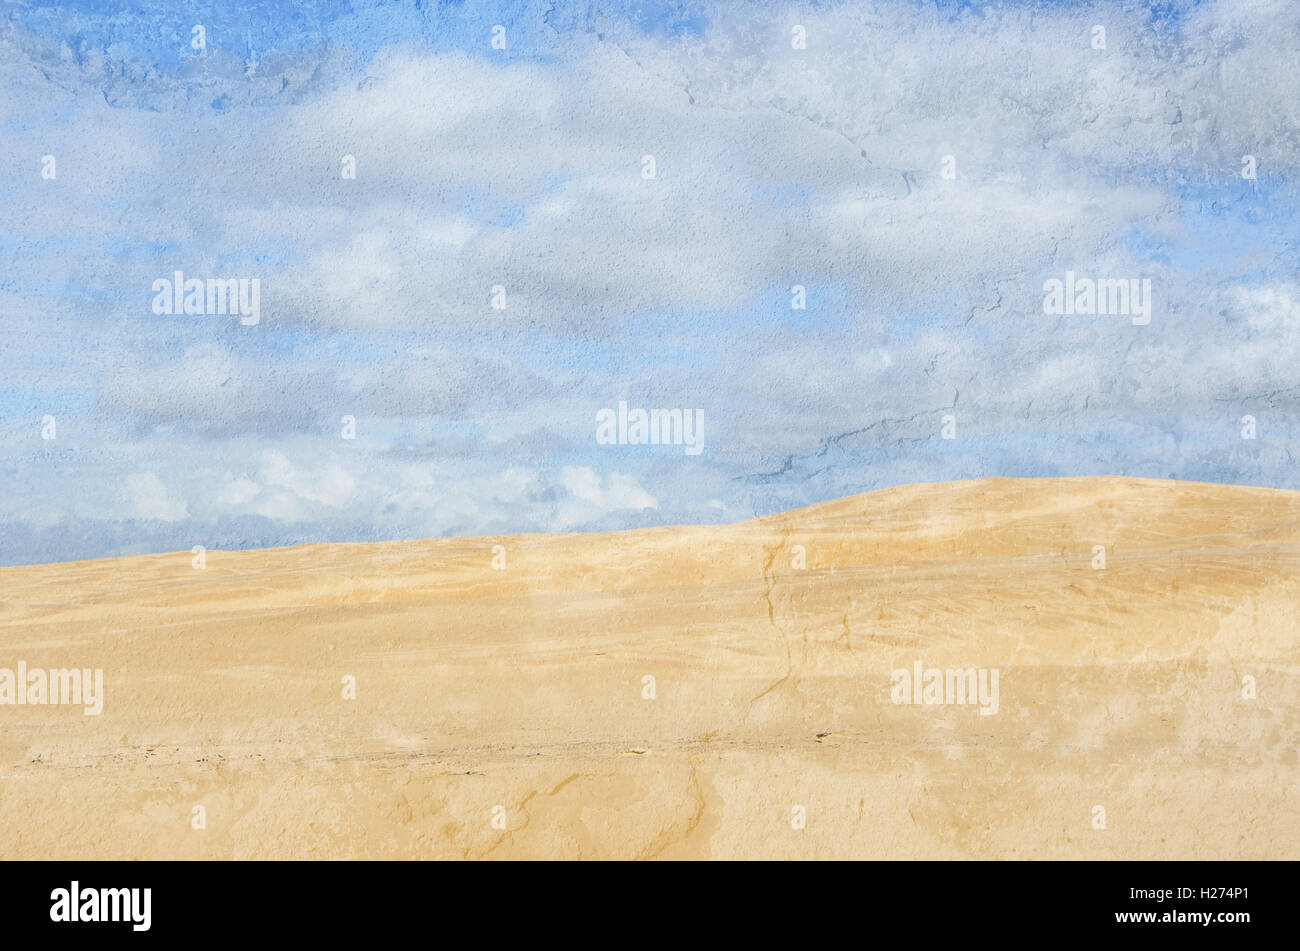 Desierto de dunas de arena bajo el cielo lleno de nubes azul. Grunge, envejecido, la textura de la imagen. Foto de stock